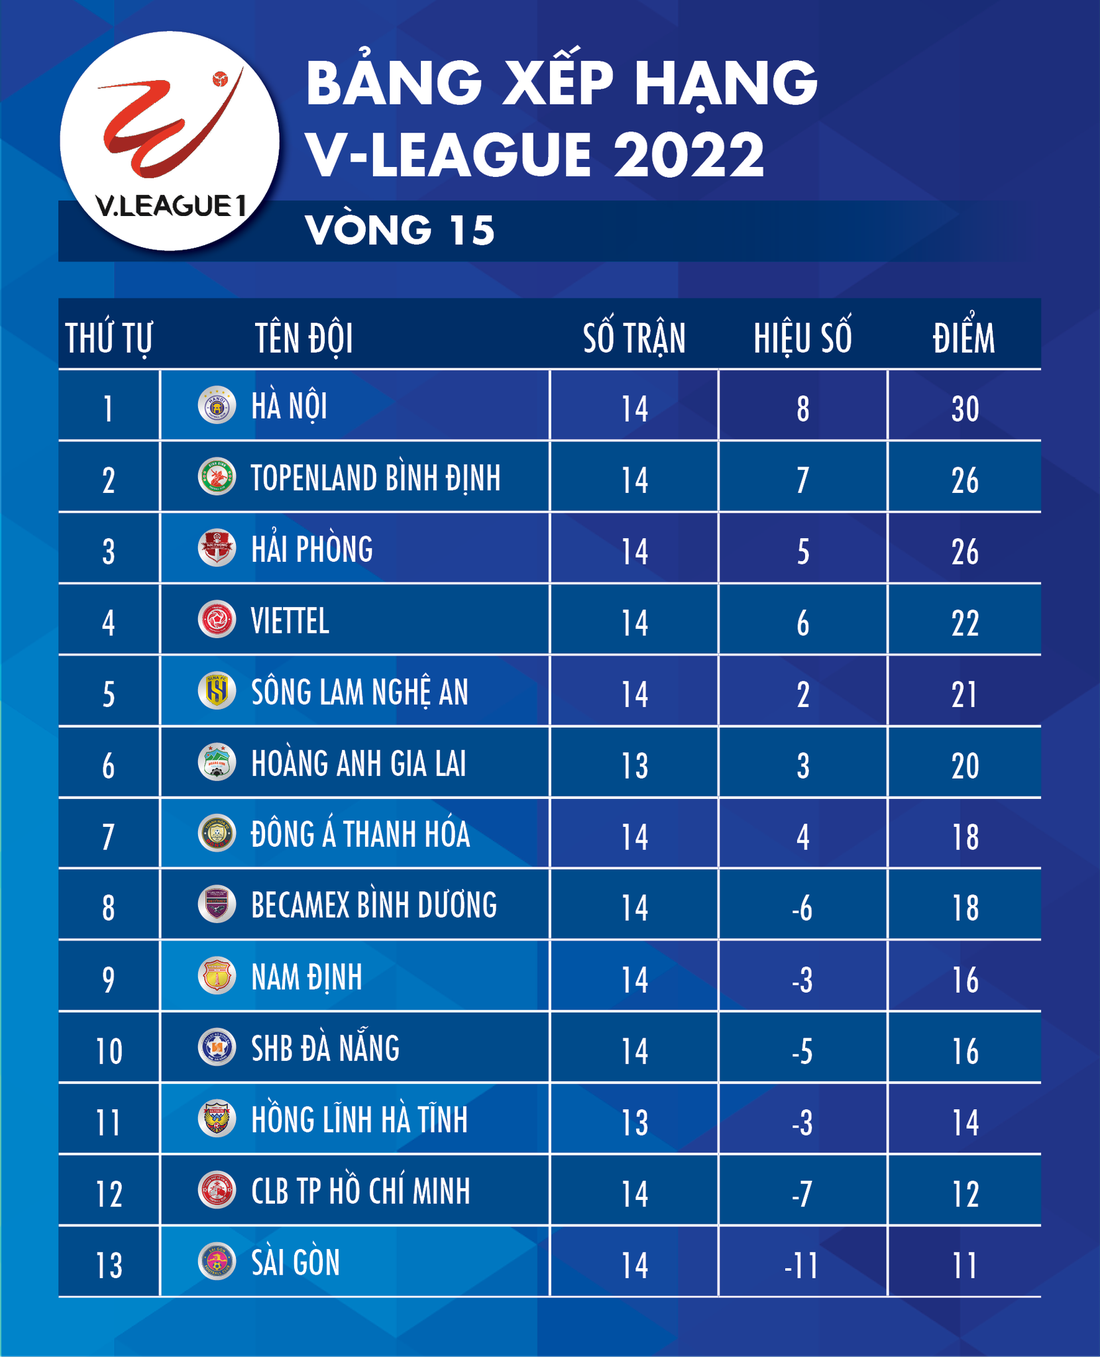 Bảng xếp hạng V-League 2022 sau vòng 15: Hà Nội nhất, CLB TP.HCM và Sài Gòn cuối bảng - Ảnh 1.